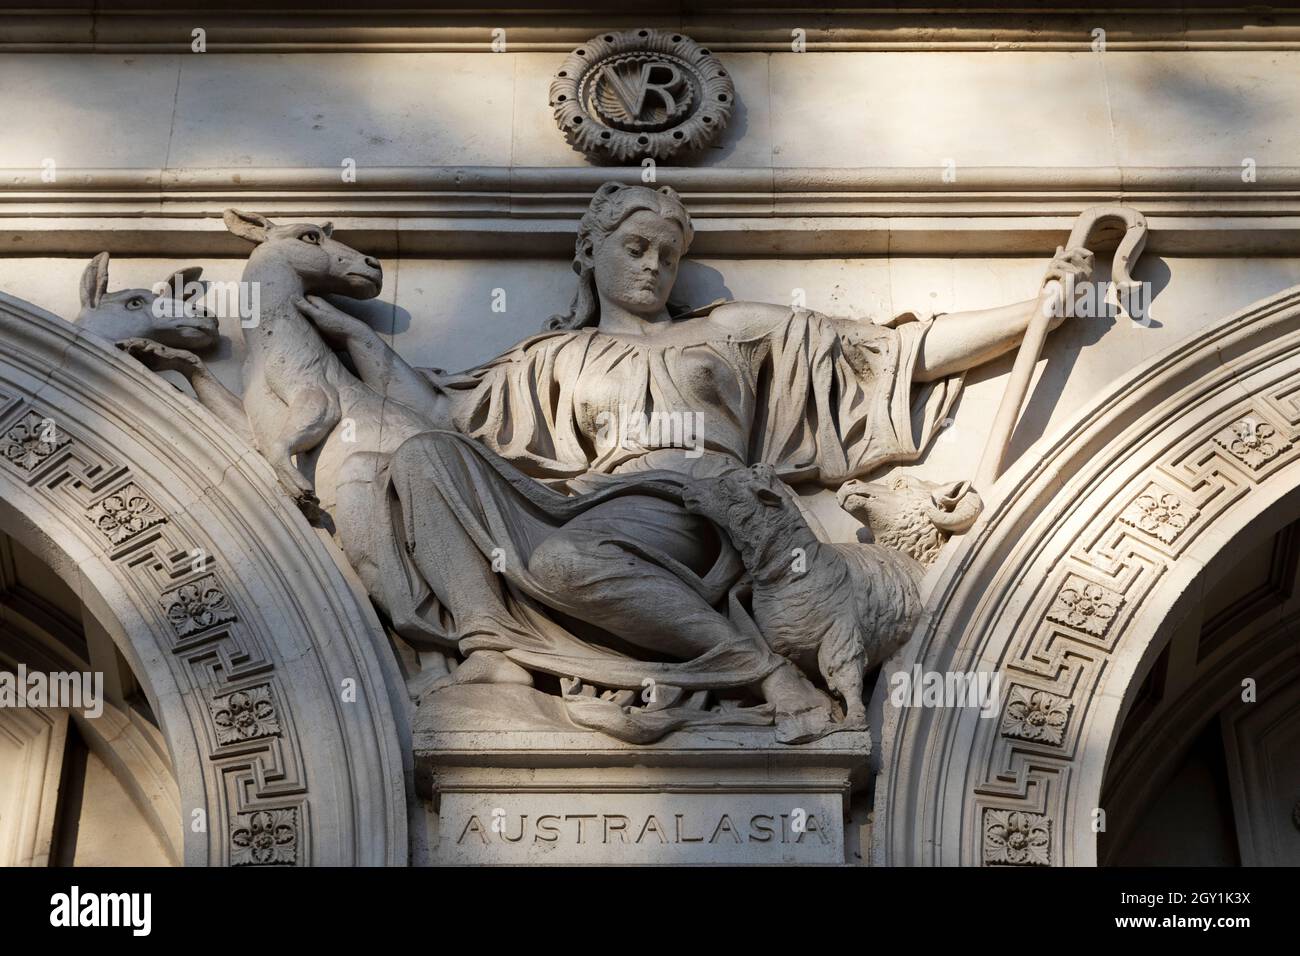 Bas Relieffigur, die den Kontinent Australasien auf der Fassade des Foreign, Commonwealth and Development Office in London, England, darstellt. Stockfoto